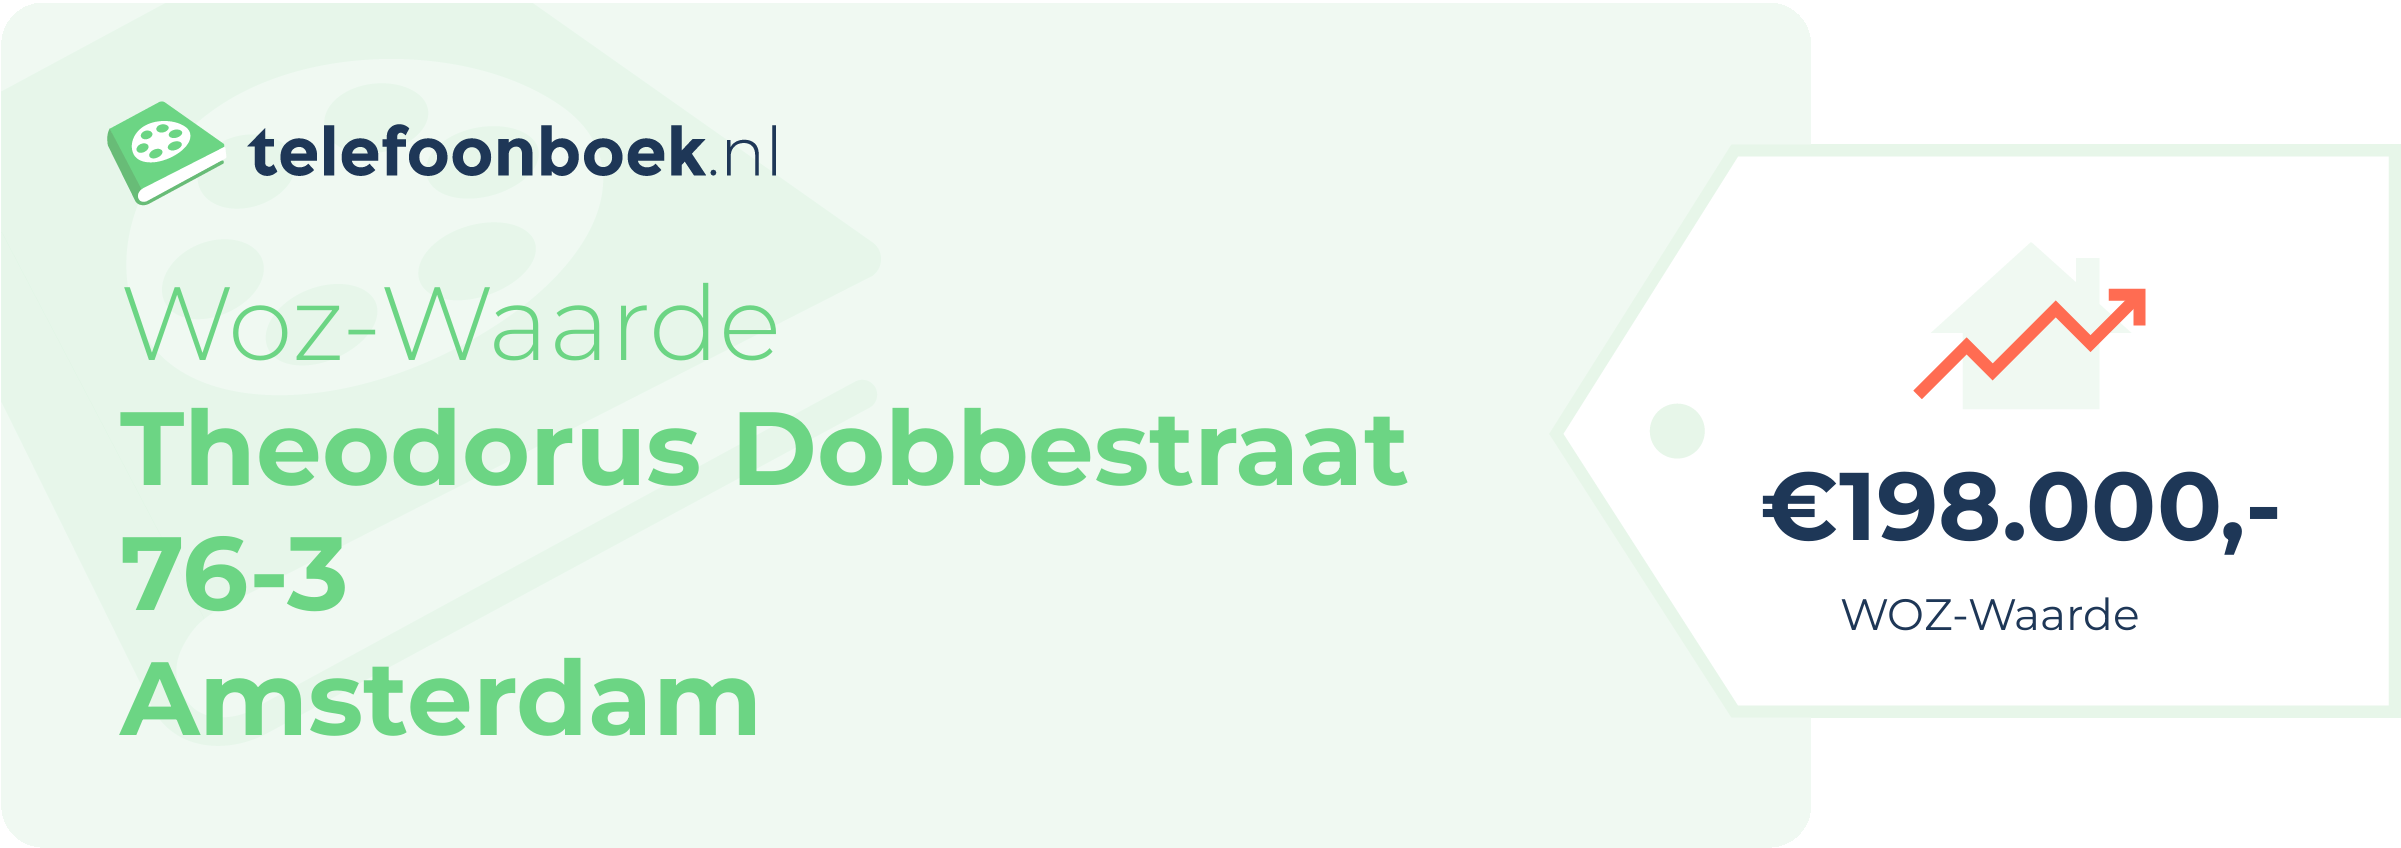 WOZ-waarde Theodorus Dobbestraat 76-3 Amsterdam